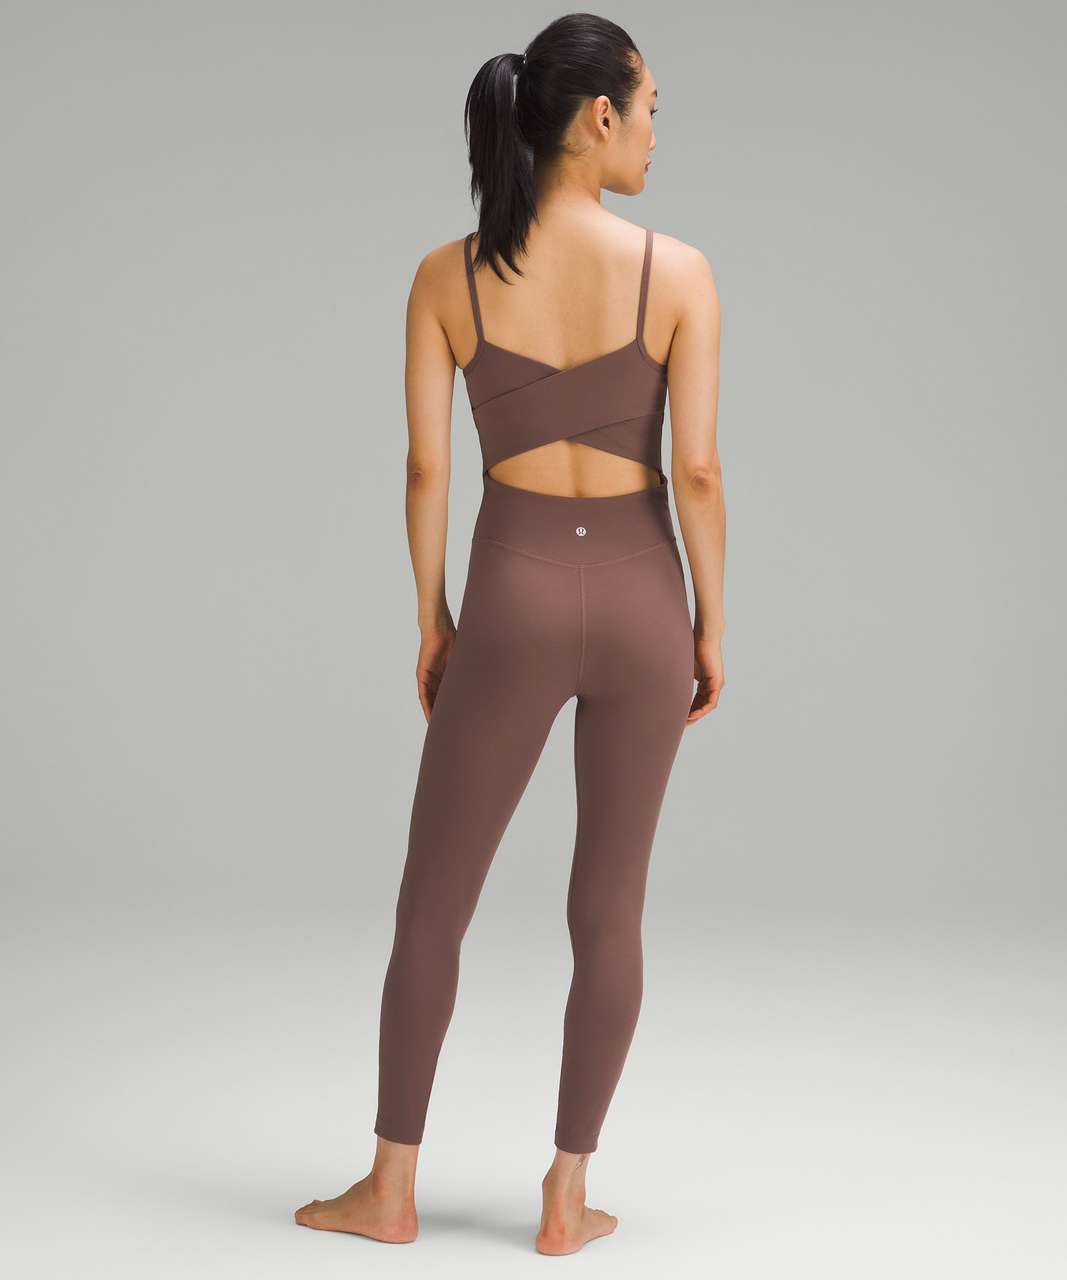 Lululemon Cross-Back Nulu Yoga Bodysuit 25" - Dark Oxide